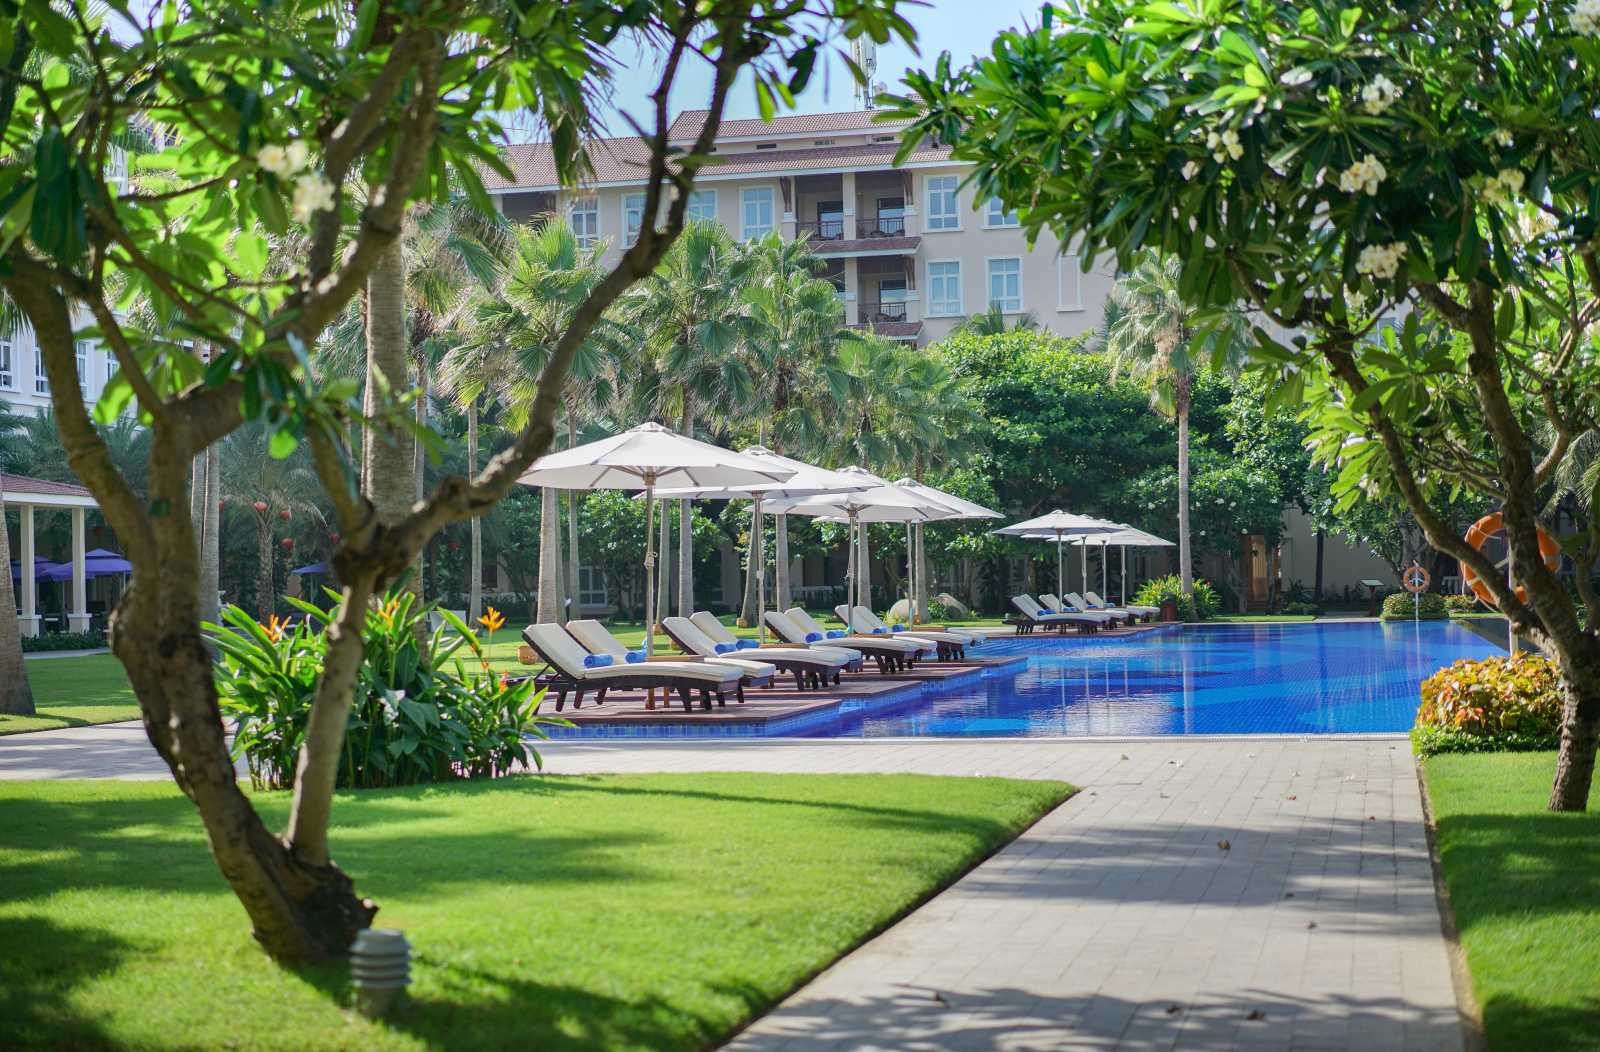 Danang Marriot Resort & Spa, Marriott, resort 5 sao, du lịch Đà Nẵng, du lịch gia đình, khu nghỉ dưỡng dành cho gia đình